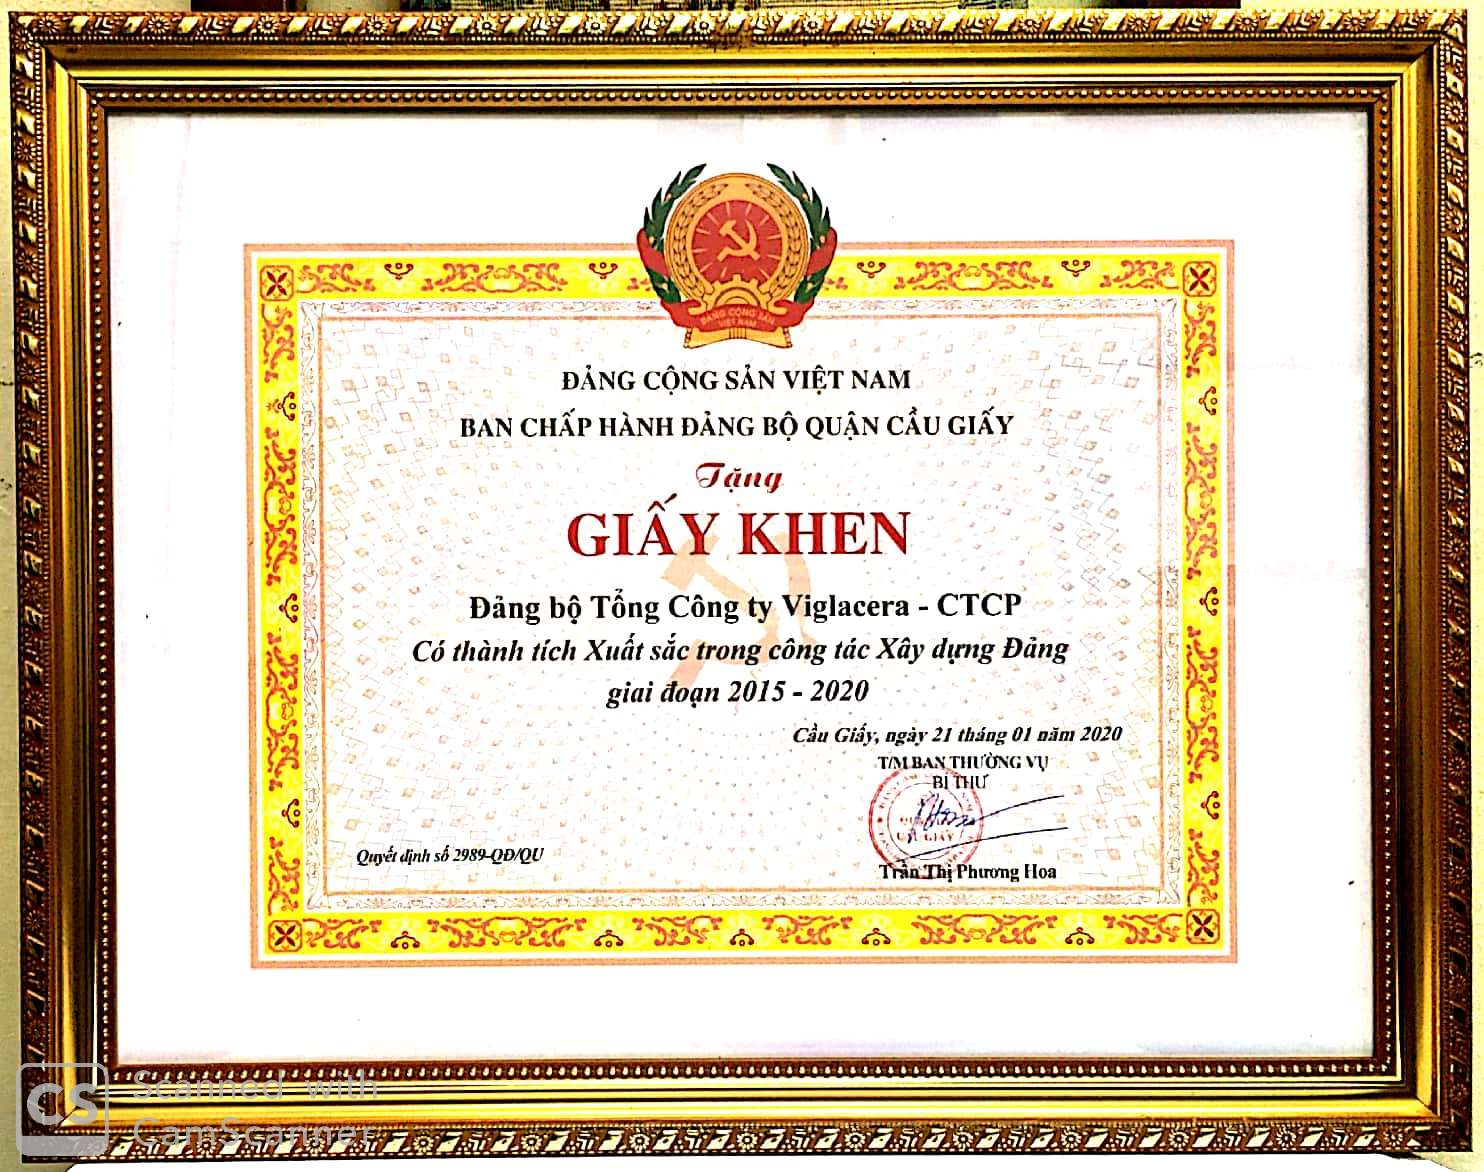 Tự hào 90 năm Đảng Cộng sản Việt Nam - Đảng Bộ Tổng Công ty Viglacera – CTCP được tặng Giấy khen vì những thành tích xuất sắc trong công tác xây dựng đảng giai đoạn 2015-2020.